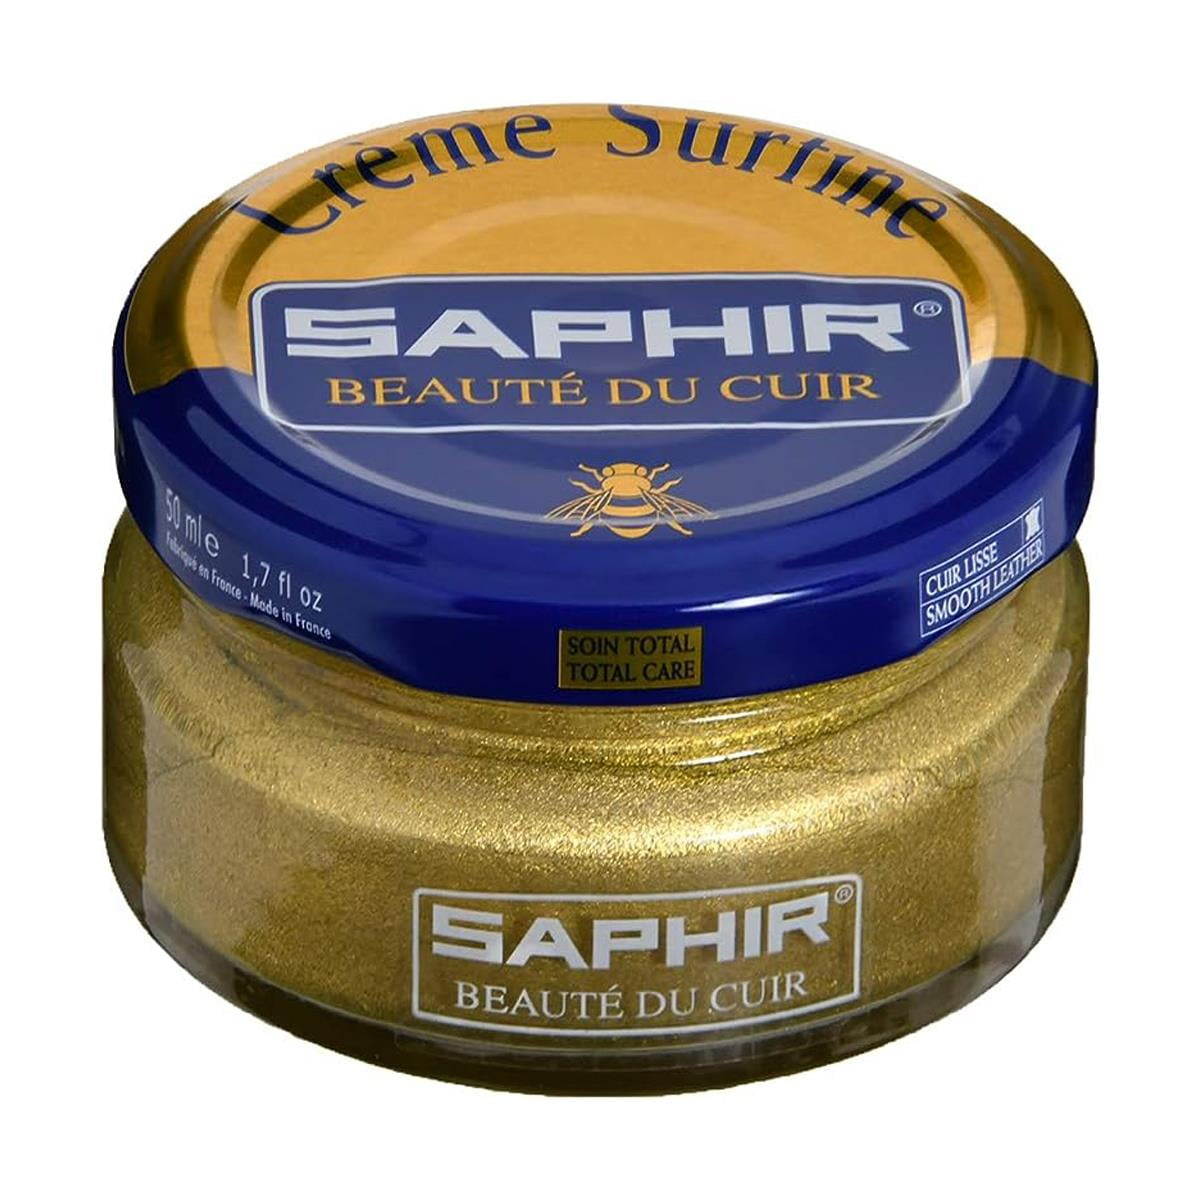 Saphir Beauté du Cuir Créme Delicate 50ml - Quality Shop